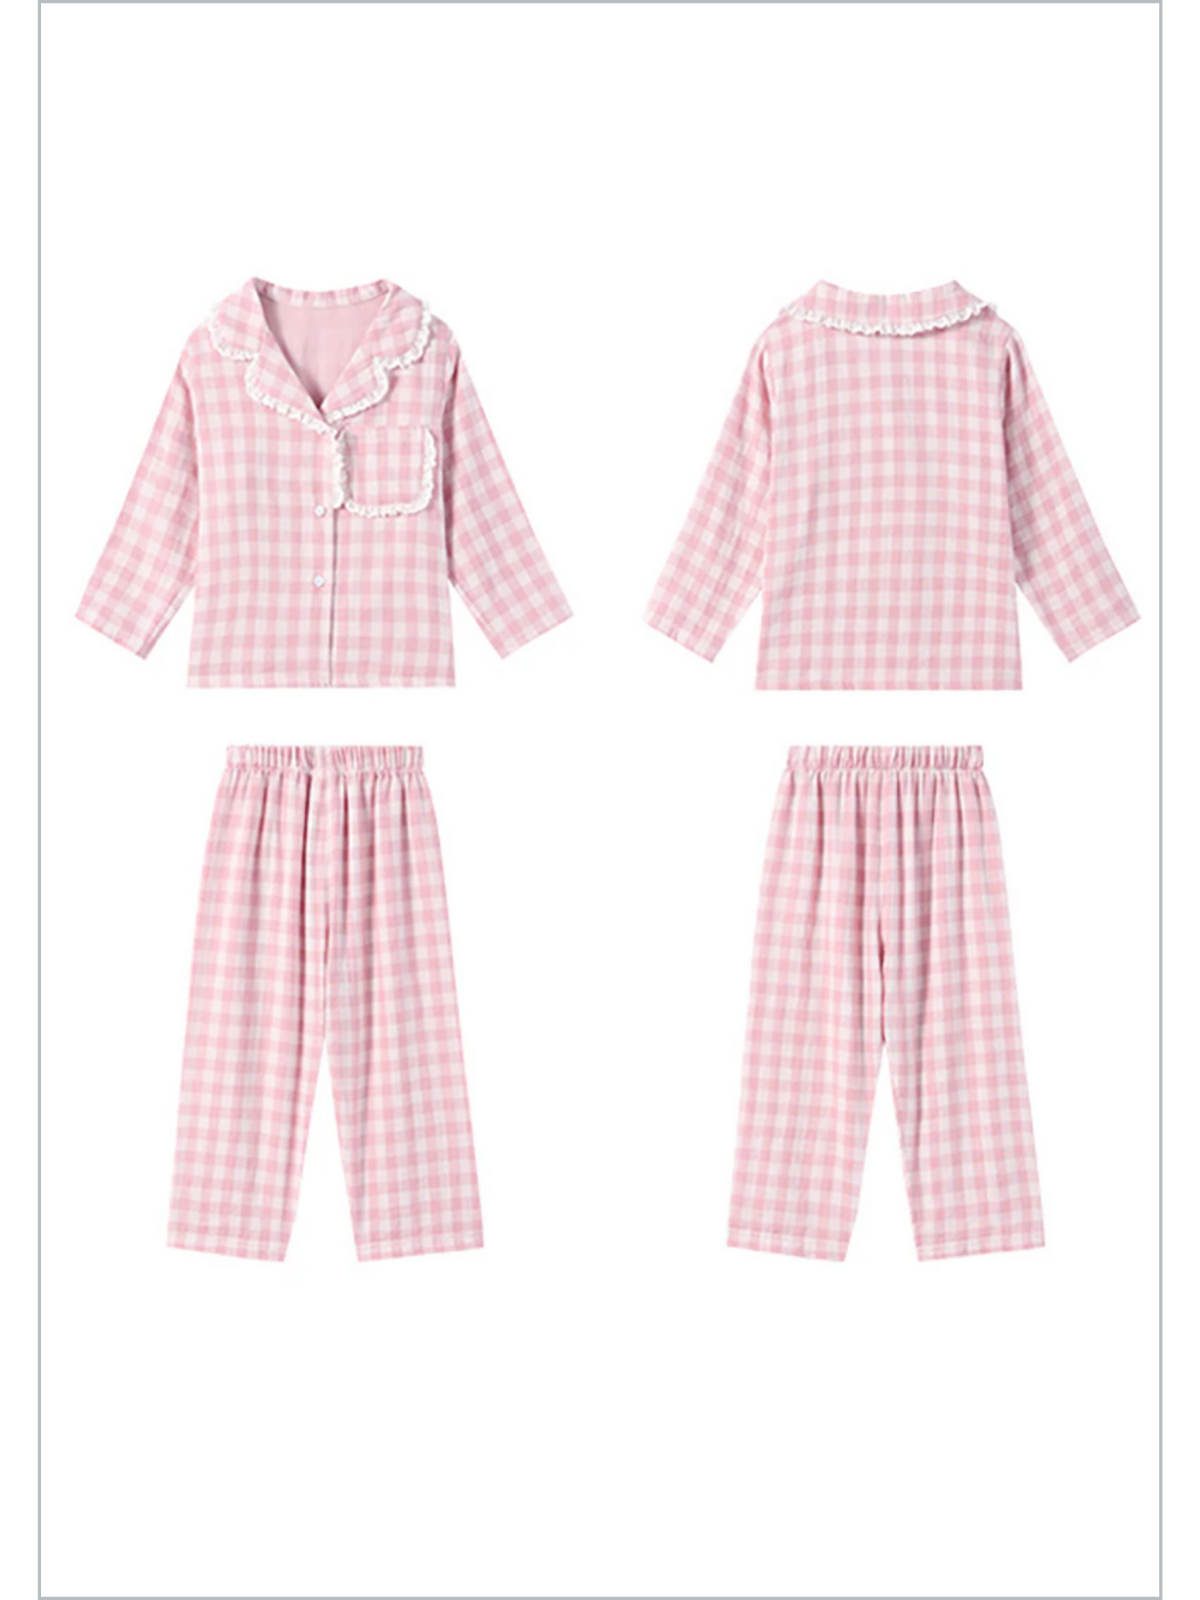 Mia Belle Girls Pink Gingham Pajamas | Girls Loungewear